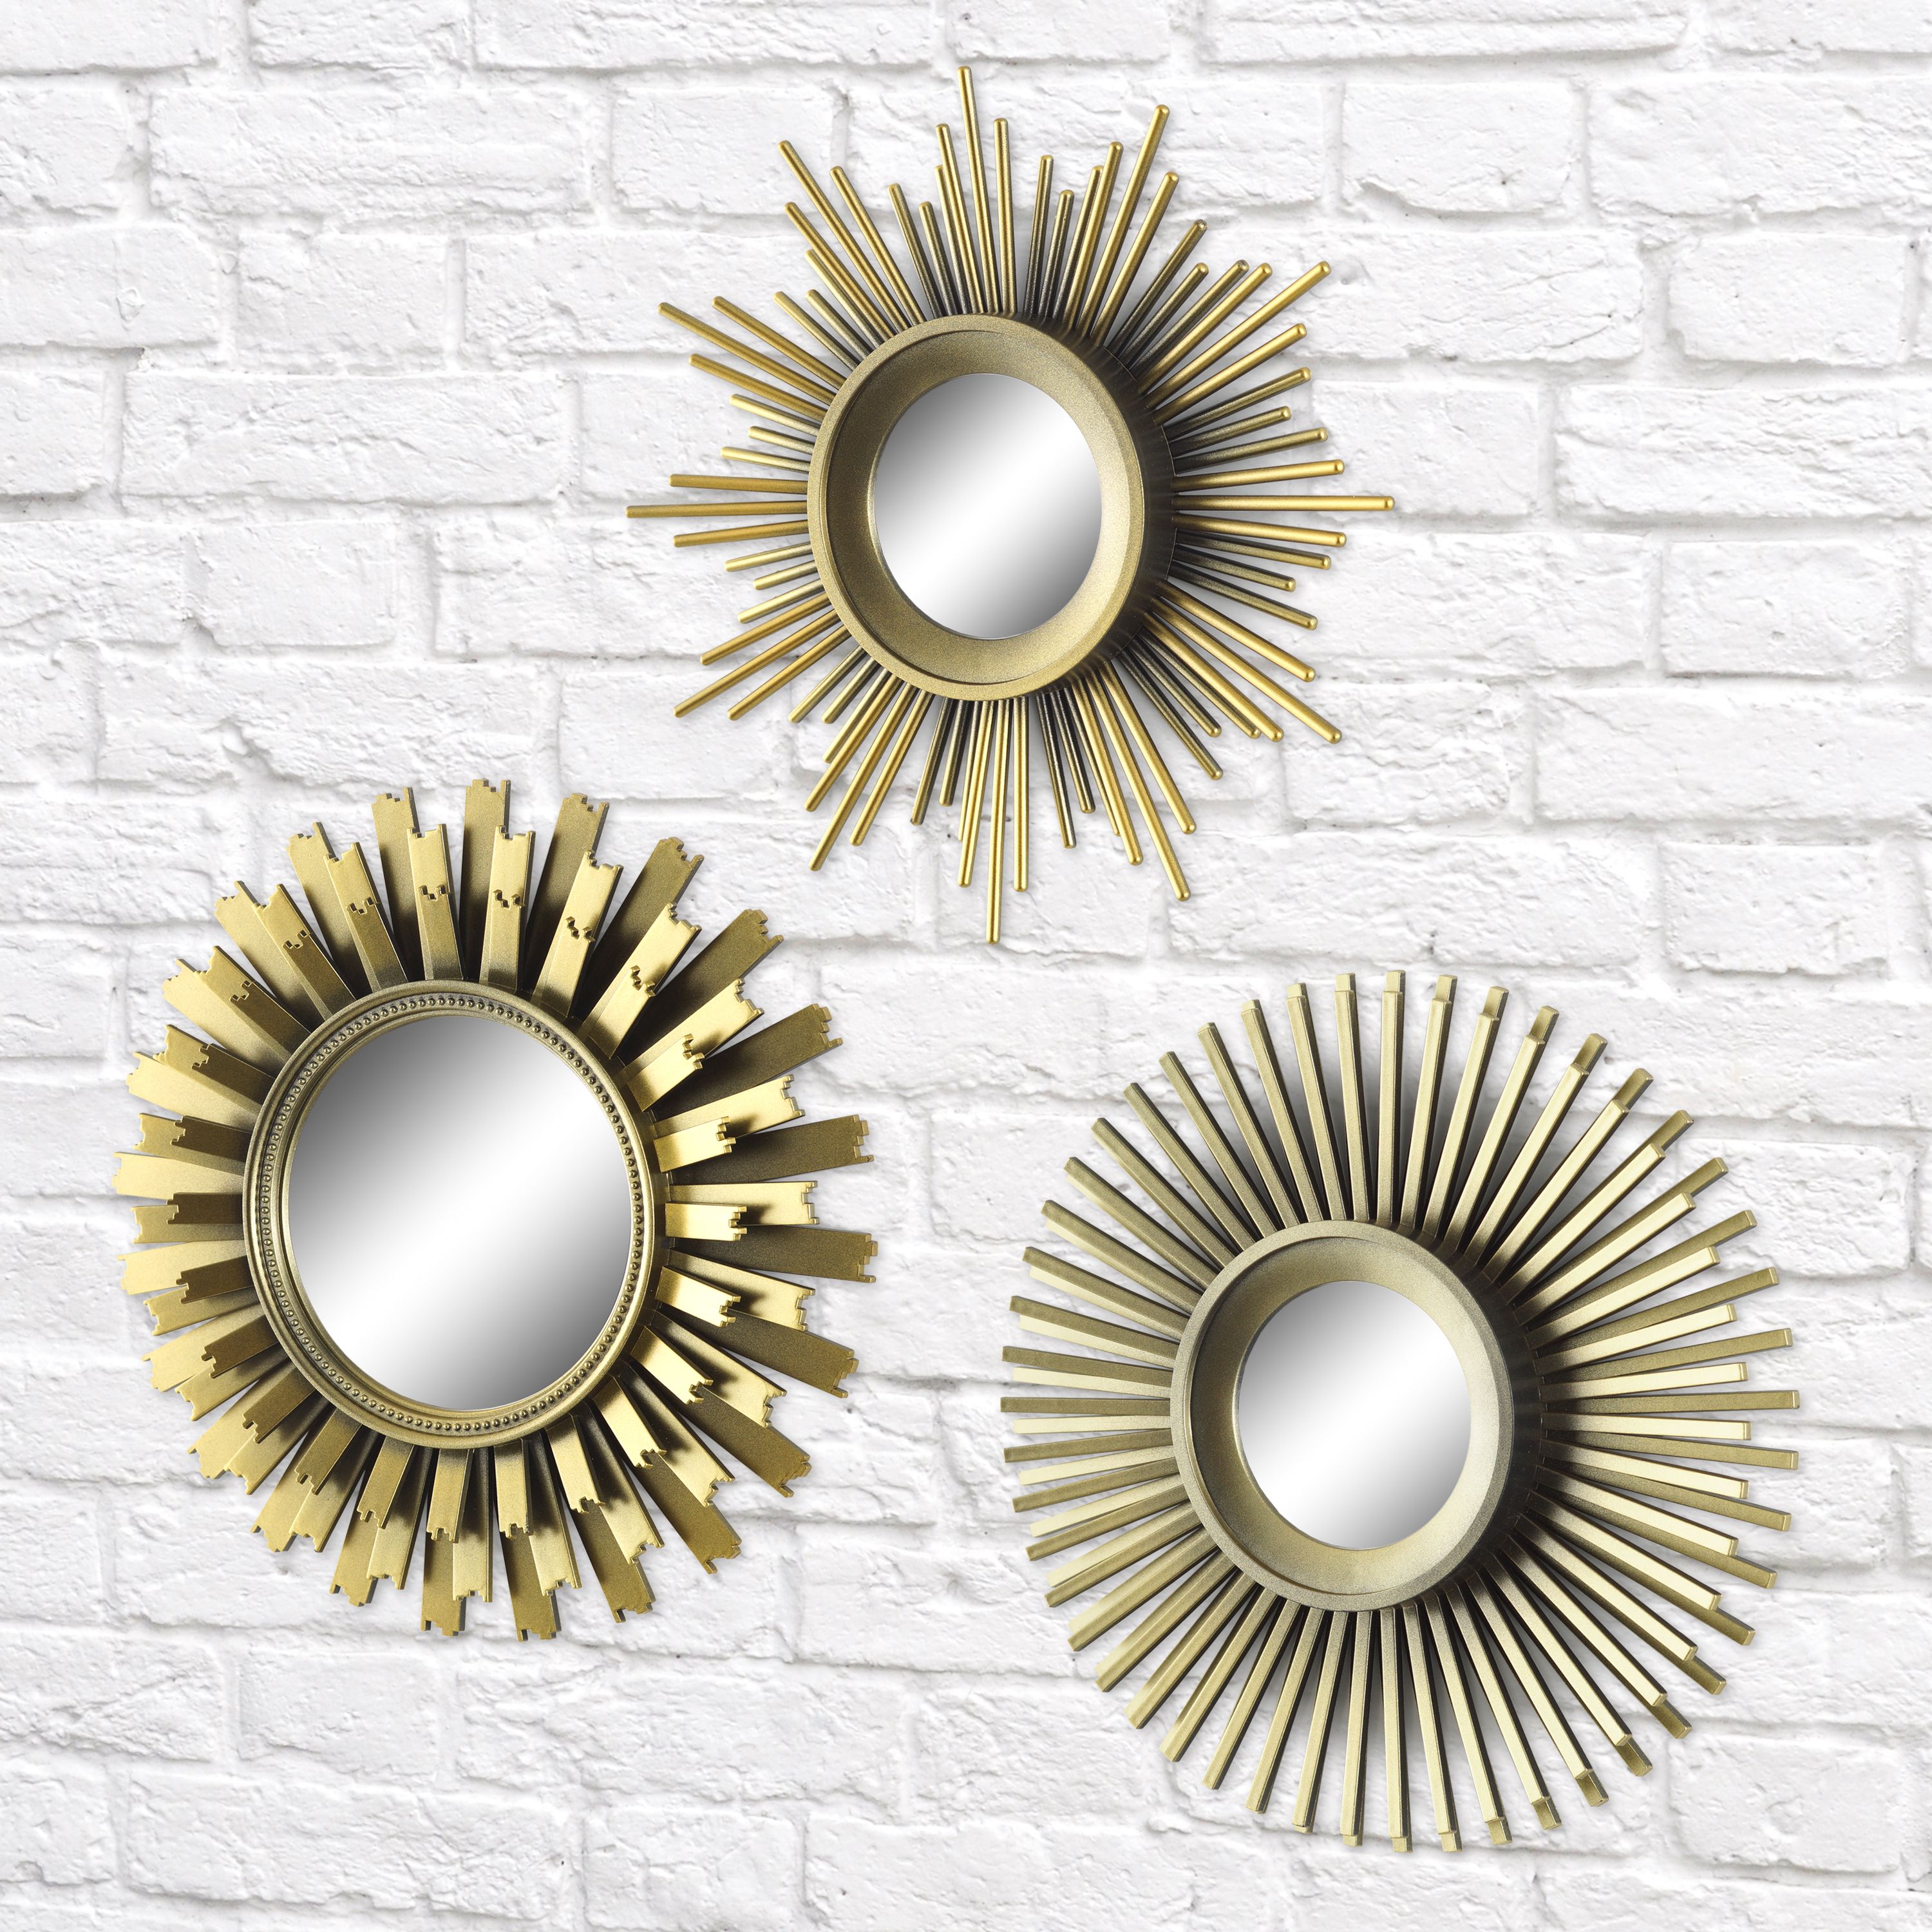 Better Homes & Gardens 3-Piece Round Sunburst Mirror Set in Gold Finish - image 5 of 5